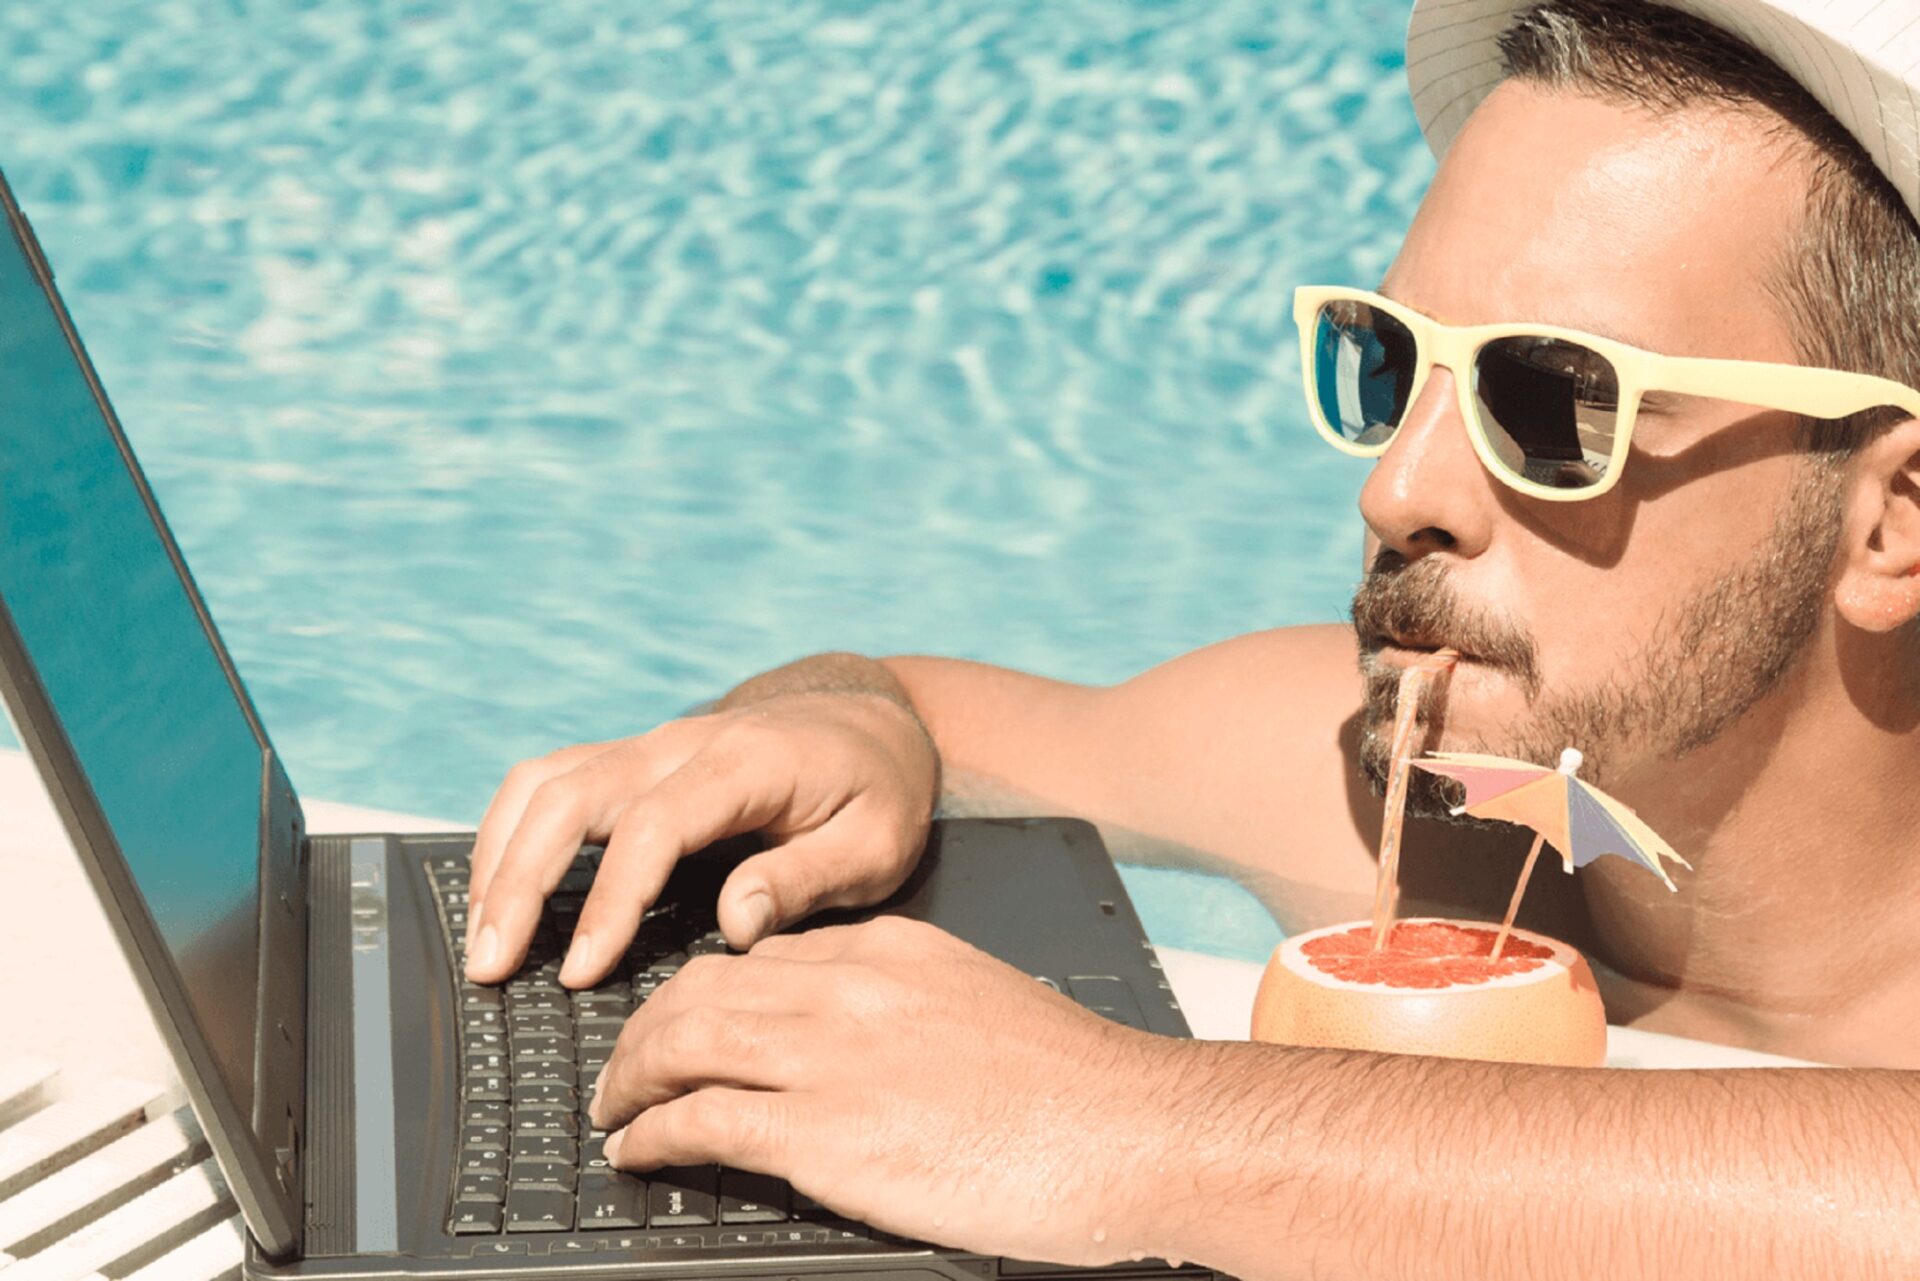 Топ фрилансер. Мужчина с ноутбуком на море. Бизнесмен на отдыхе. Бизнесмен на пляже с ноутбуком. Бизнесмен фрилансер.